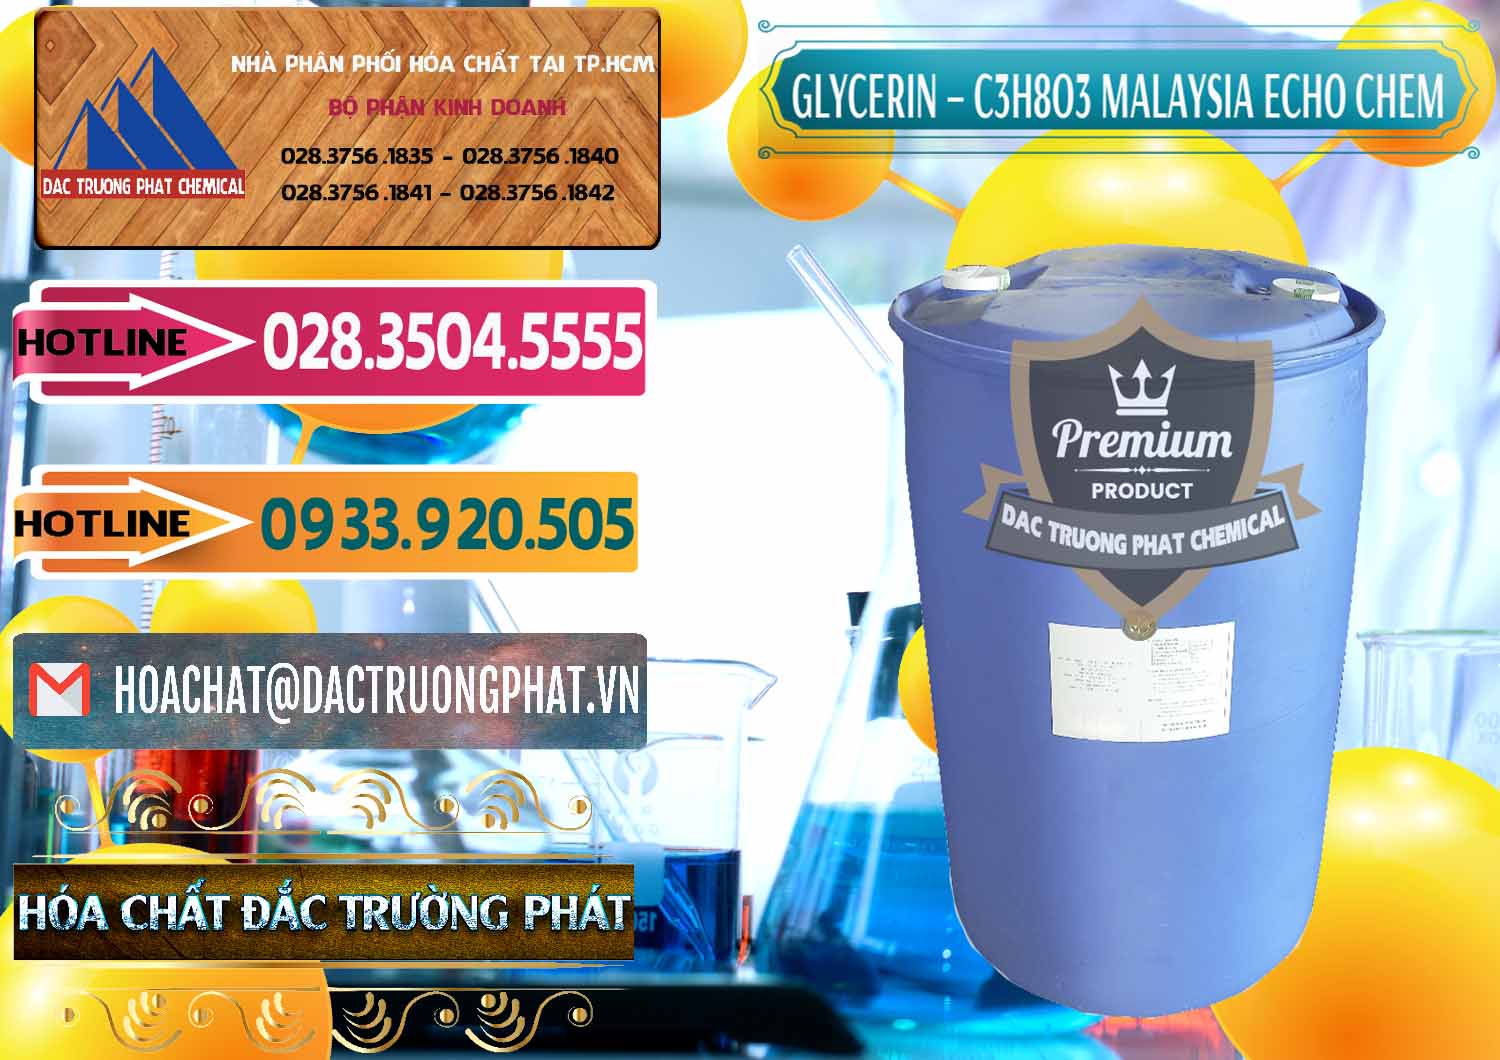 Cty cung cấp ( bán ) C3H8O3 - Glycerin 99.7% Echo Chem Malaysia - 0273 - Nơi cung cấp ( phân phối ) hóa chất tại TP.HCM - dactruongphat.vn